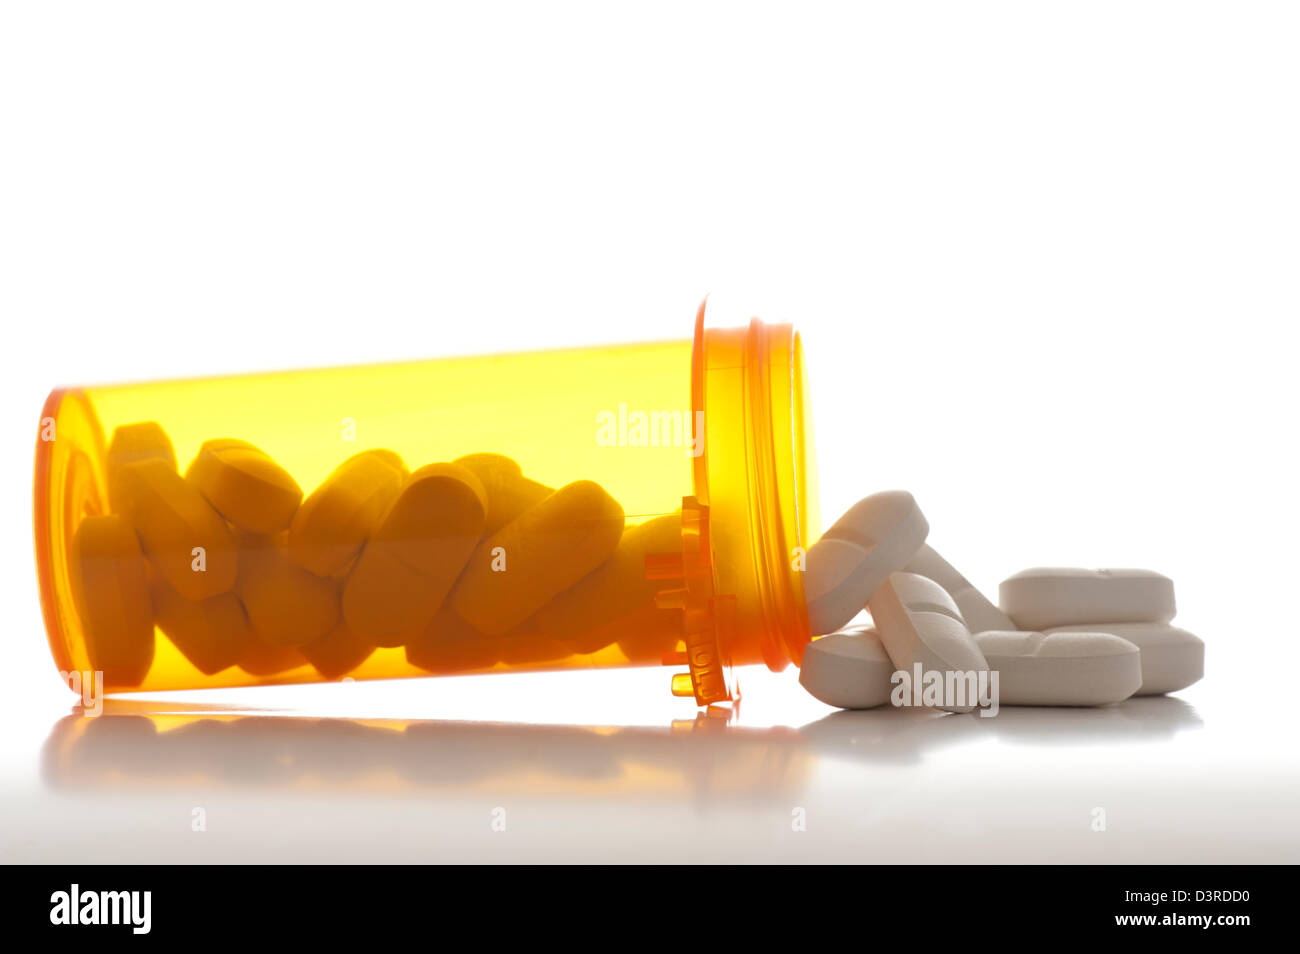 Detailansicht der Verschreibung Pille Flasche mit Pillen und kein label Stockfoto